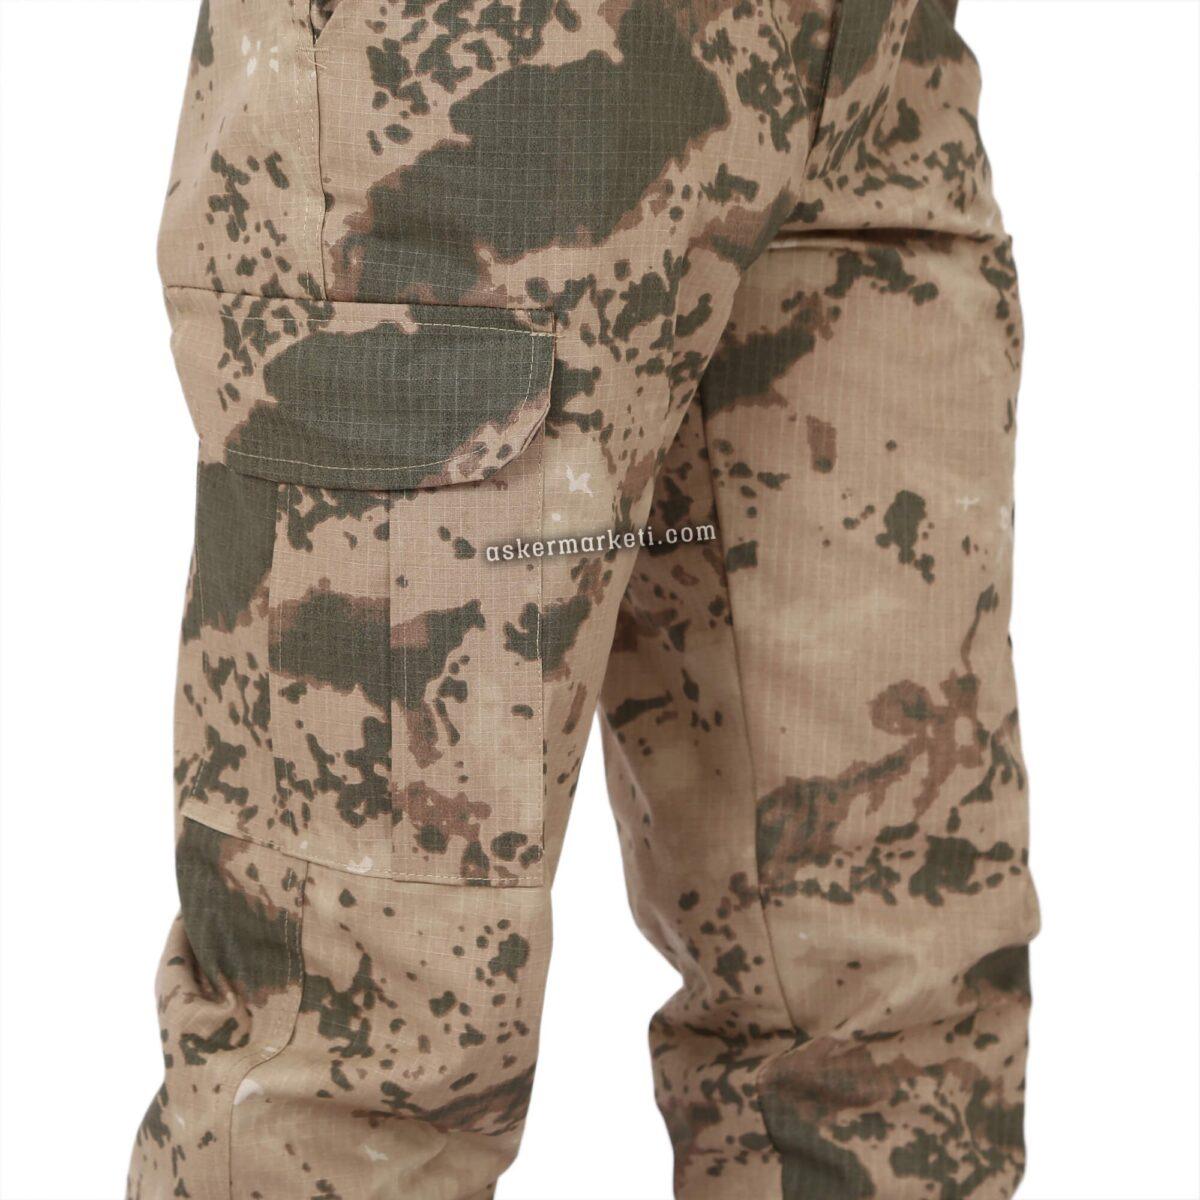 jandarma yeni tip pantolon modeli asker malzemeleri ink